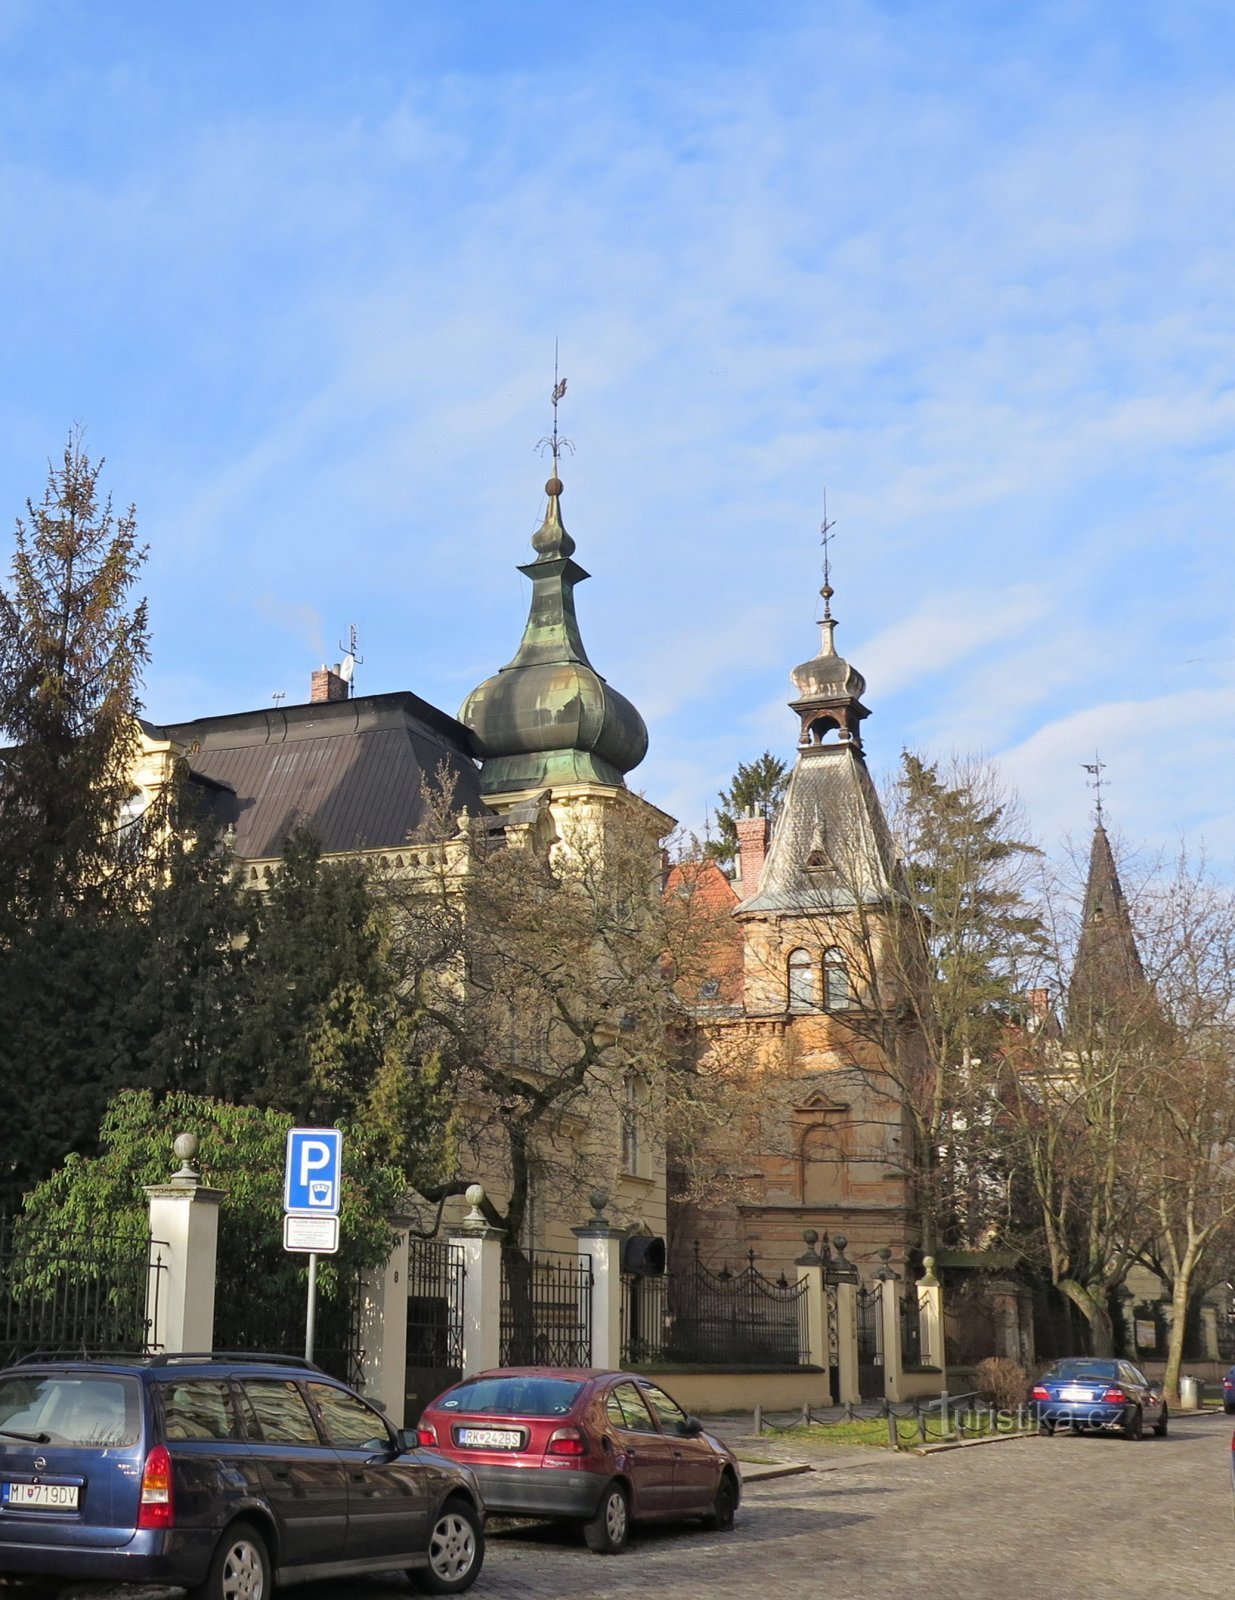 fasada w kształcie wieży willi przy ulicy Wienská (pierwsza od lewej willa Hansa Passingera)